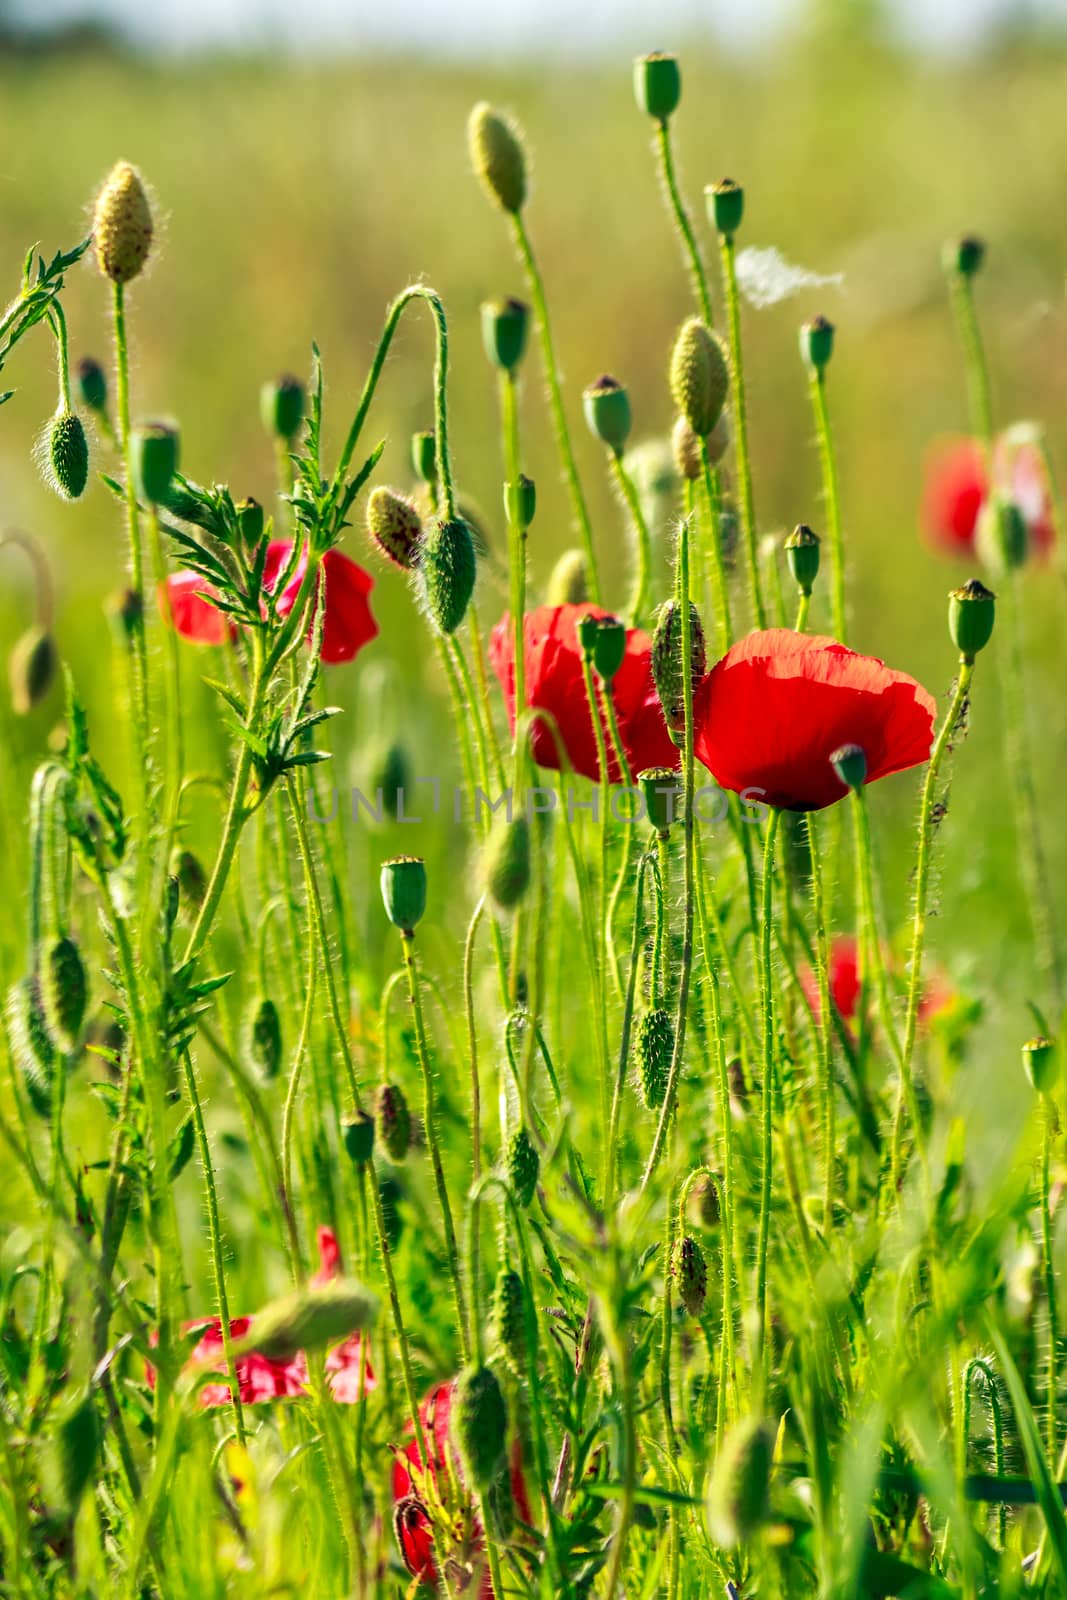 red poppy in the wheat field by Pellinni